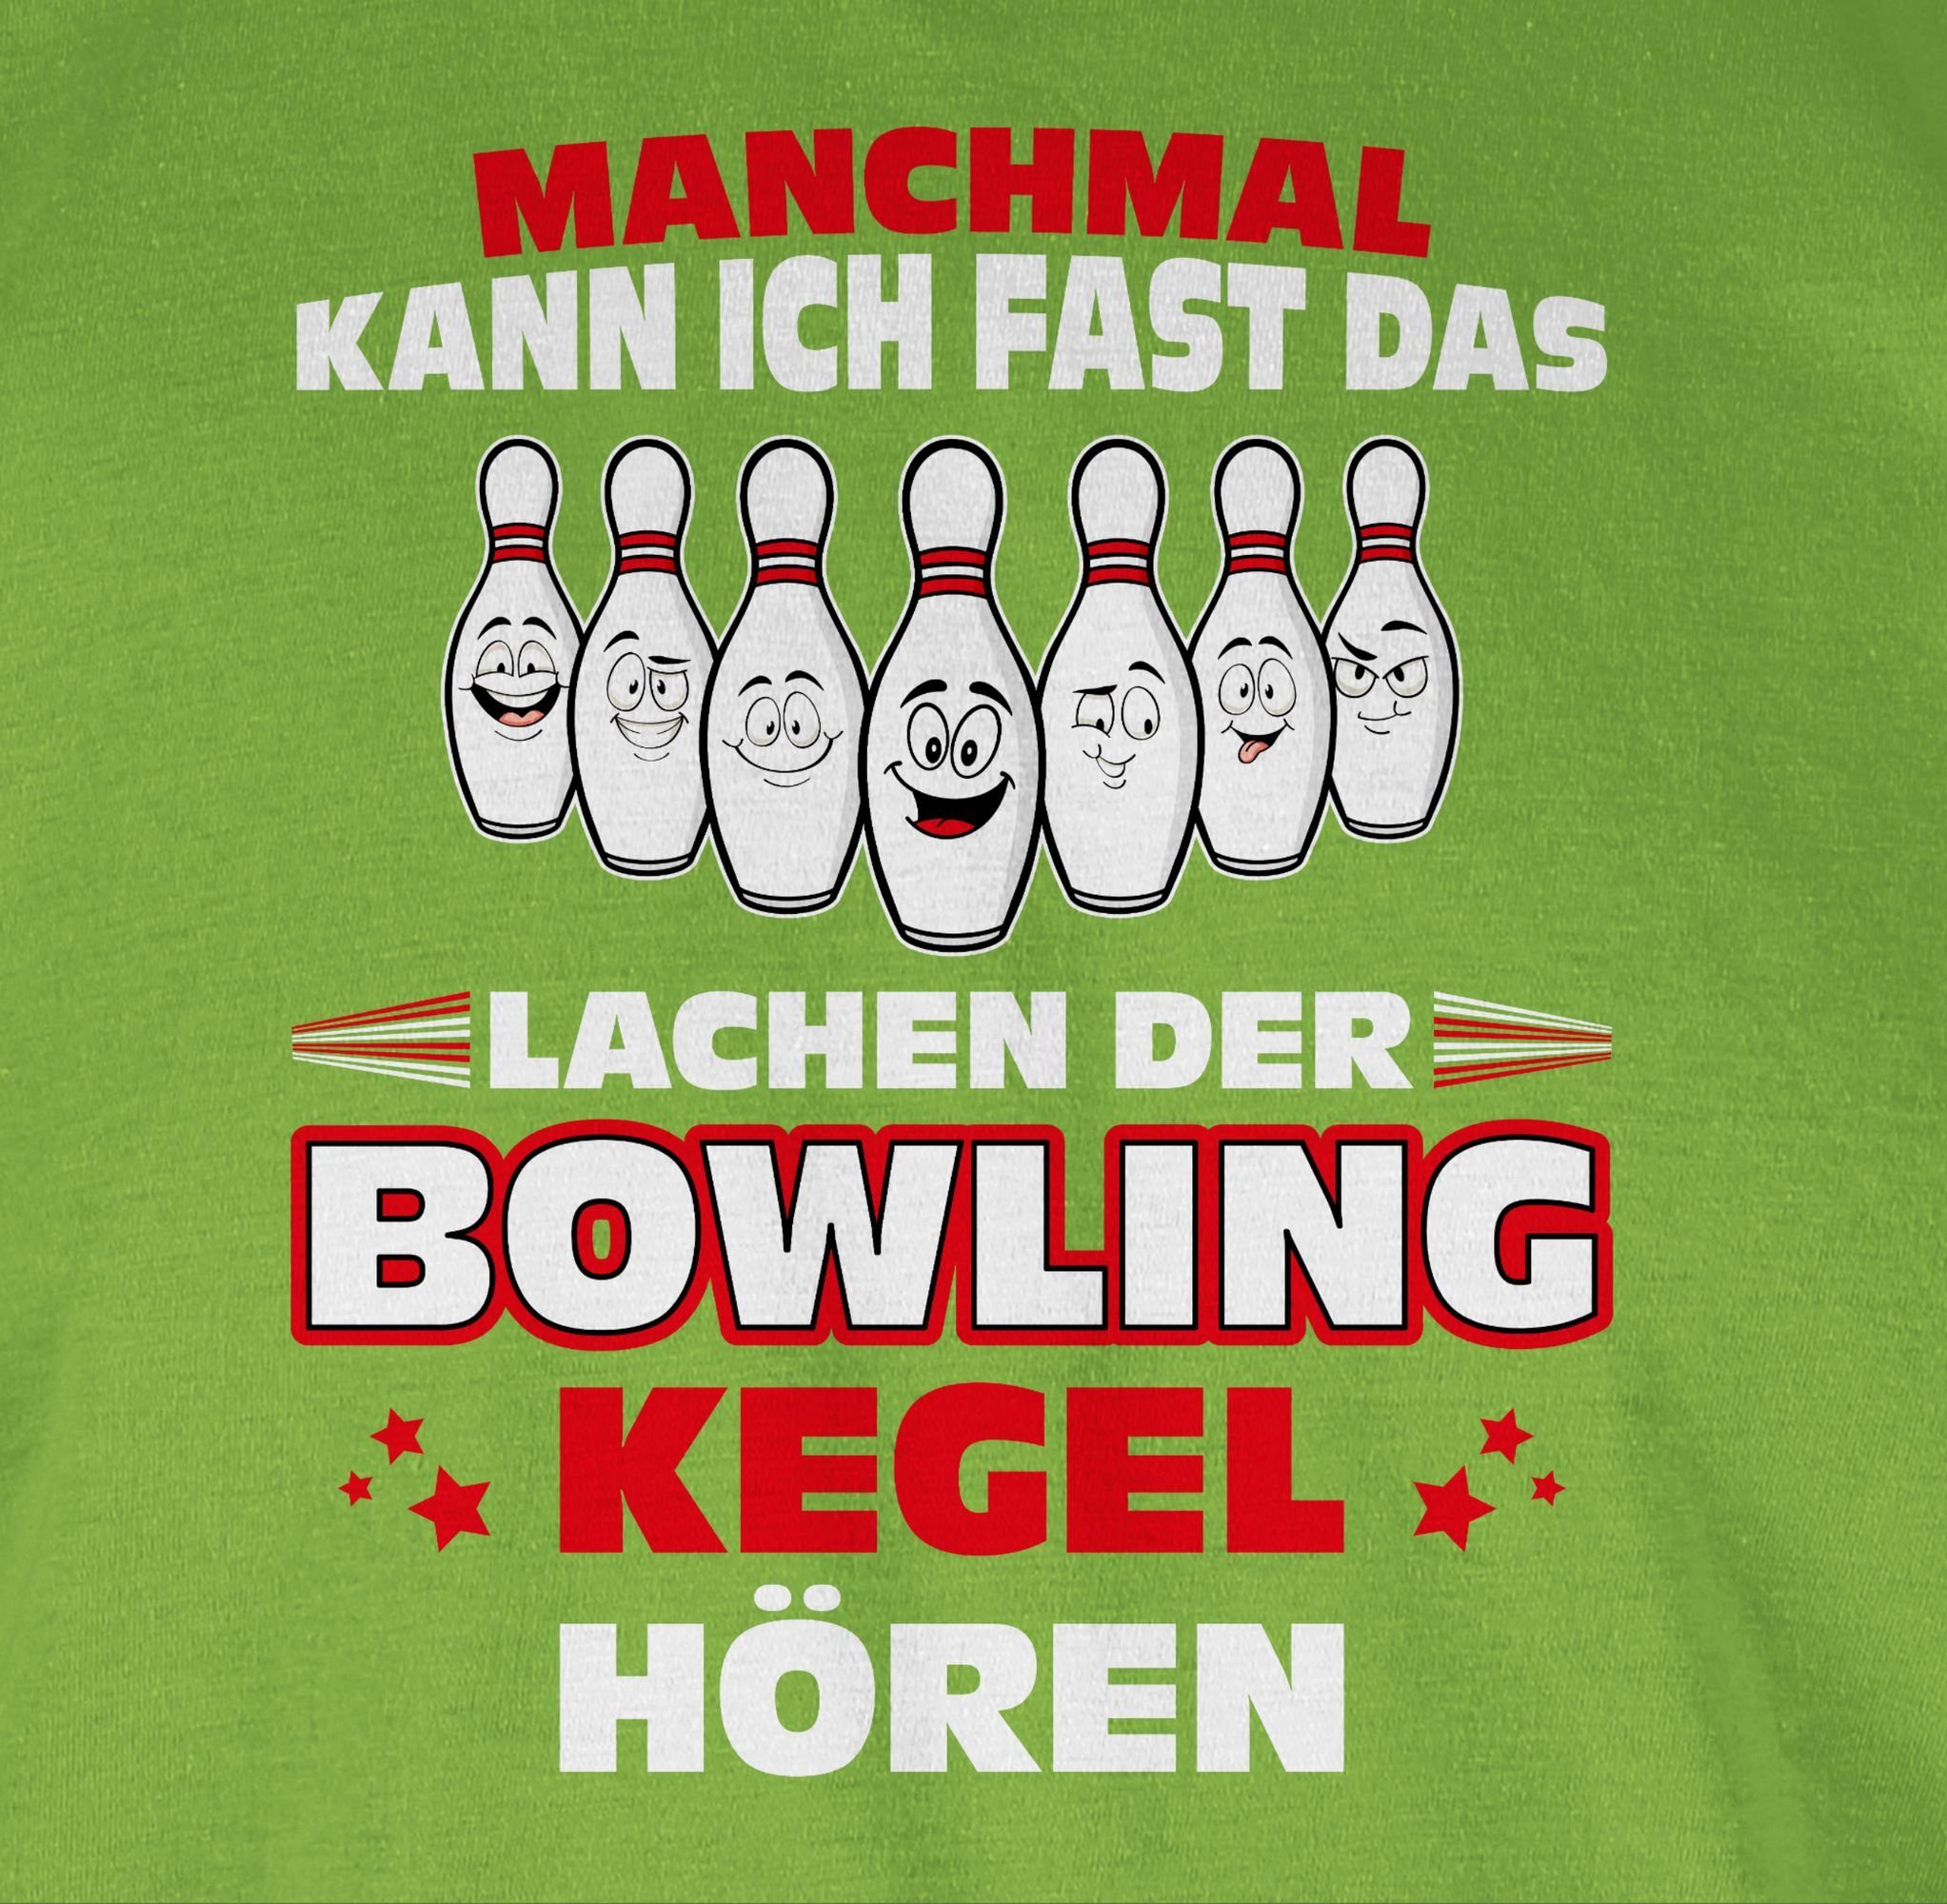 fast das hören Hellgrün Bowling Shirtracer Bowling-Kegel 03 ich Kegeln Spruc T-Shirt der Manchmal kann & Lachen Bowler